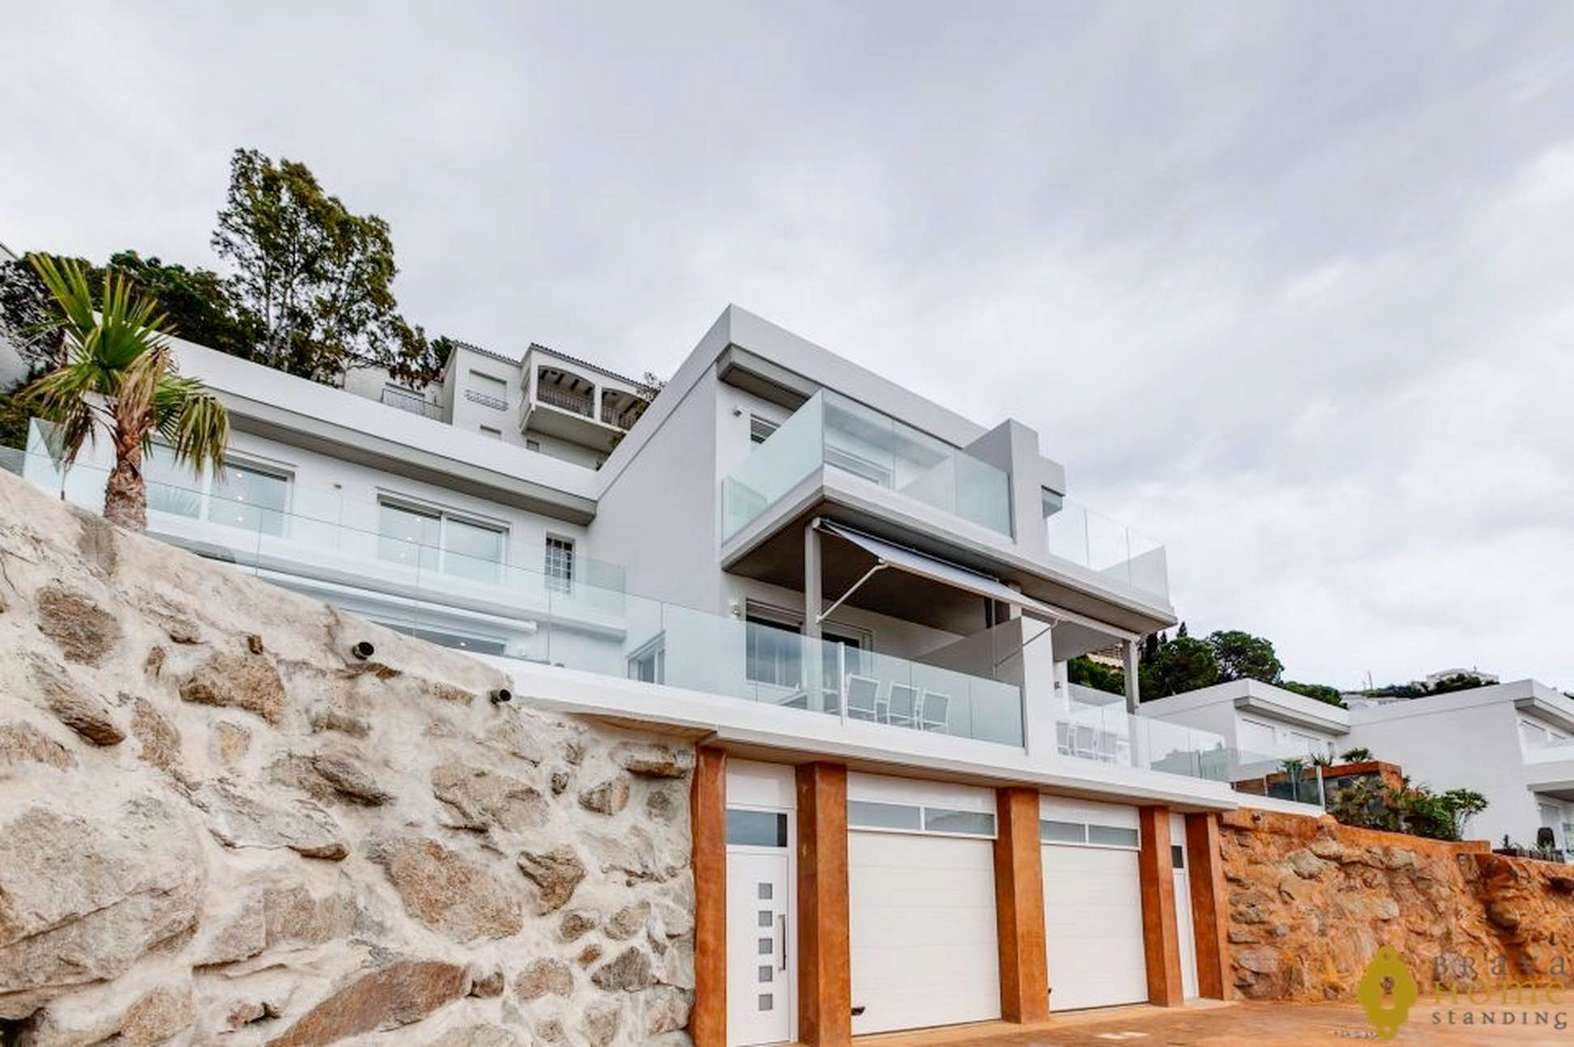 Casa de obra nueva con unas excepcionales vistas al mar muy cerca del centro de Rosas, en venta